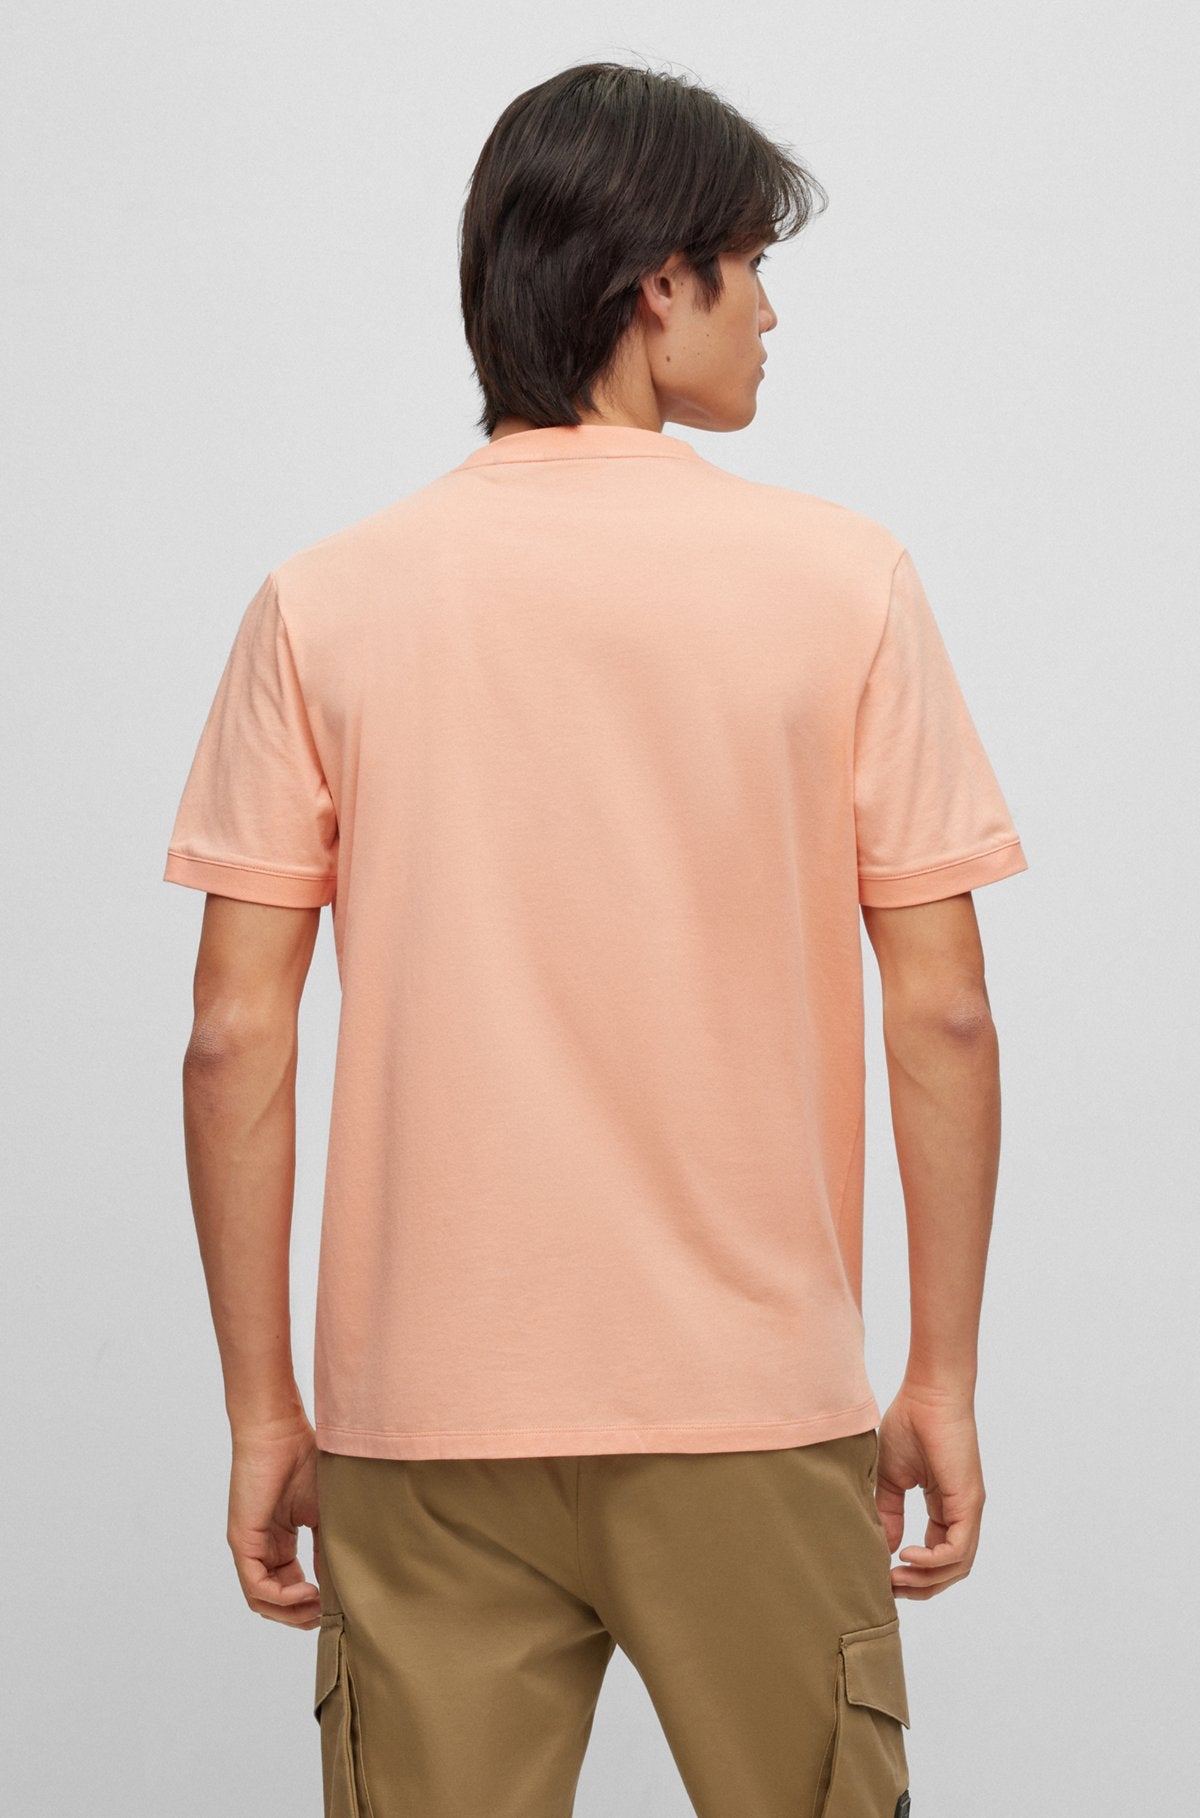 T-Shirt Hugo Boss de couleur Peche